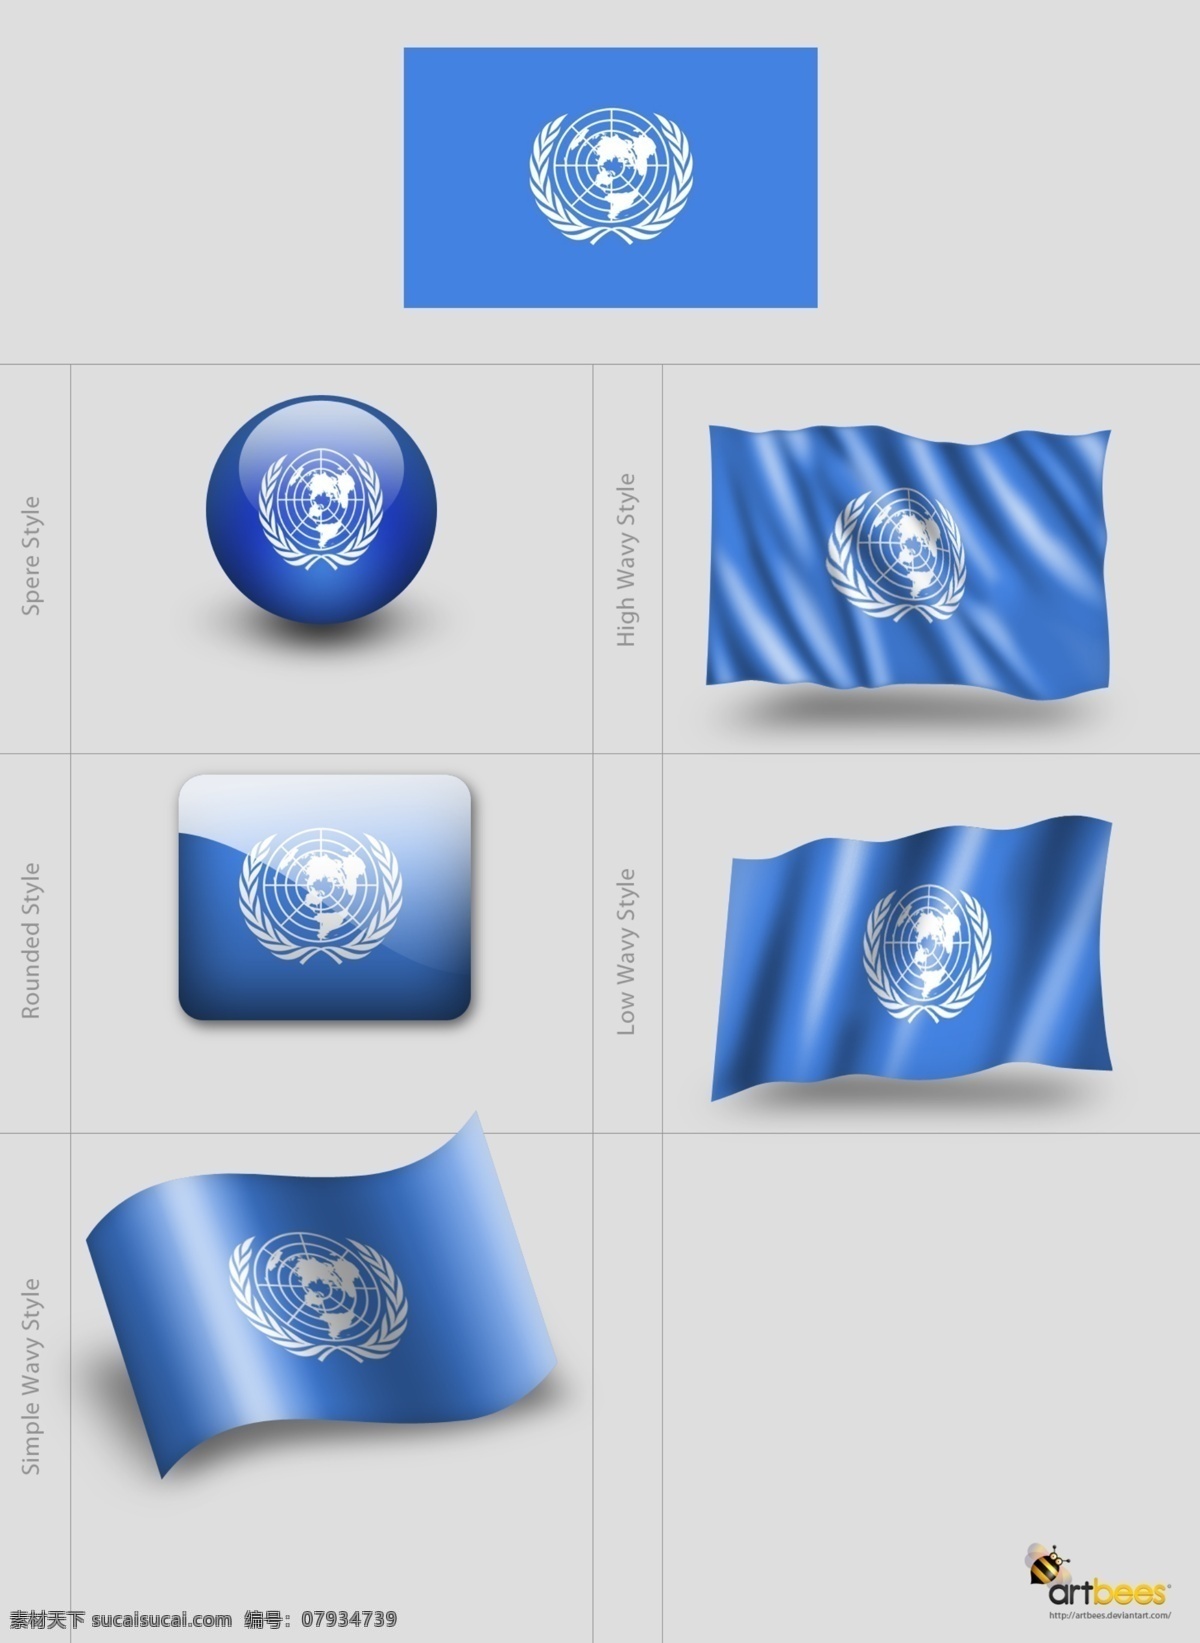 旗帜 联合国 联合国国旗 旗帜效果 旗帜贴图 蓝色 蓝色旗帜 vi 模板 分层 源文件